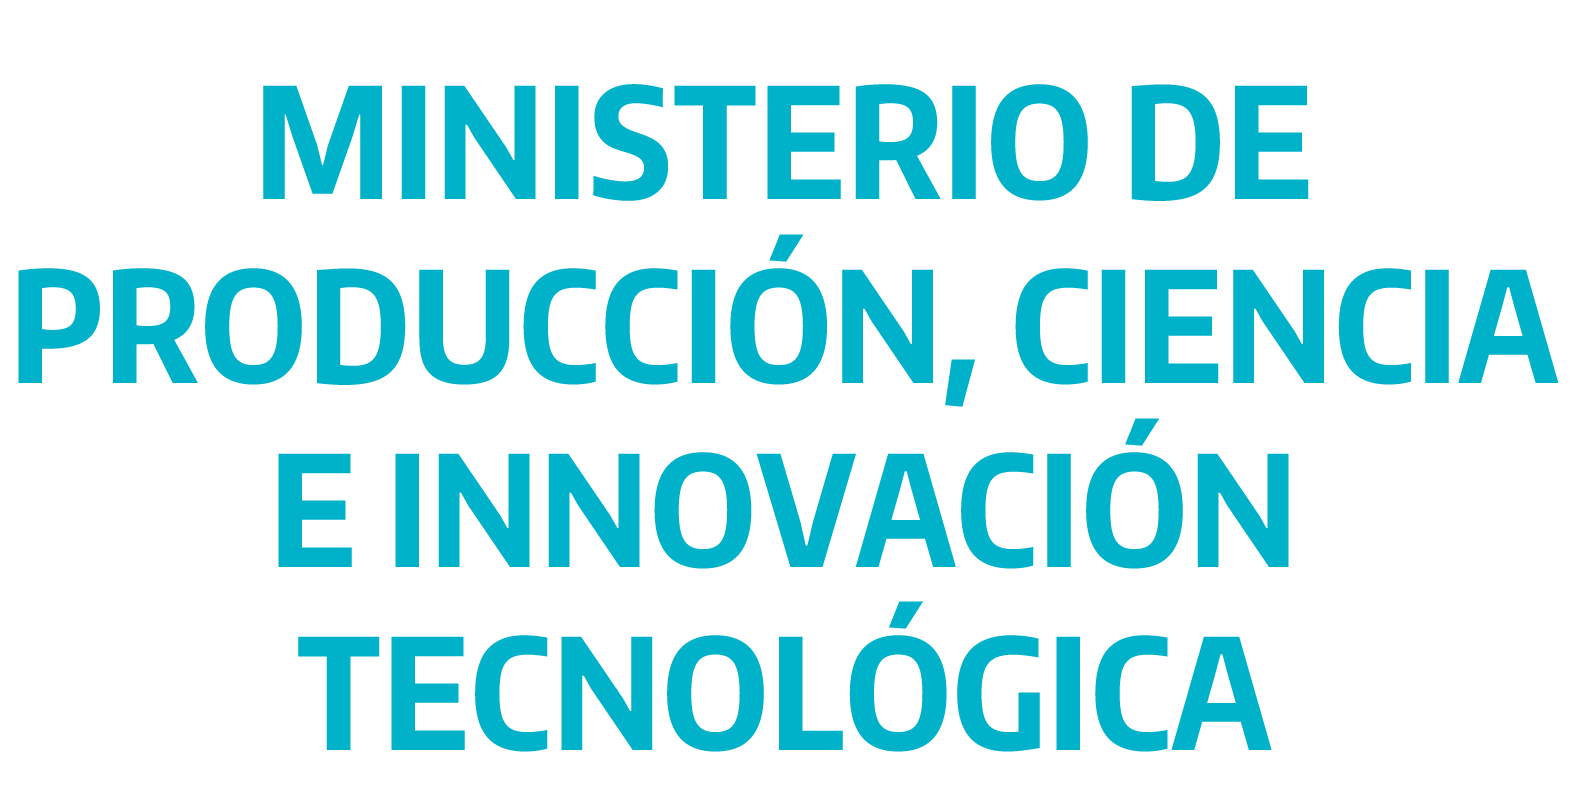 Ministerio de Producción, Ciencia y Tecnología de la Provincia de Buenos Aires